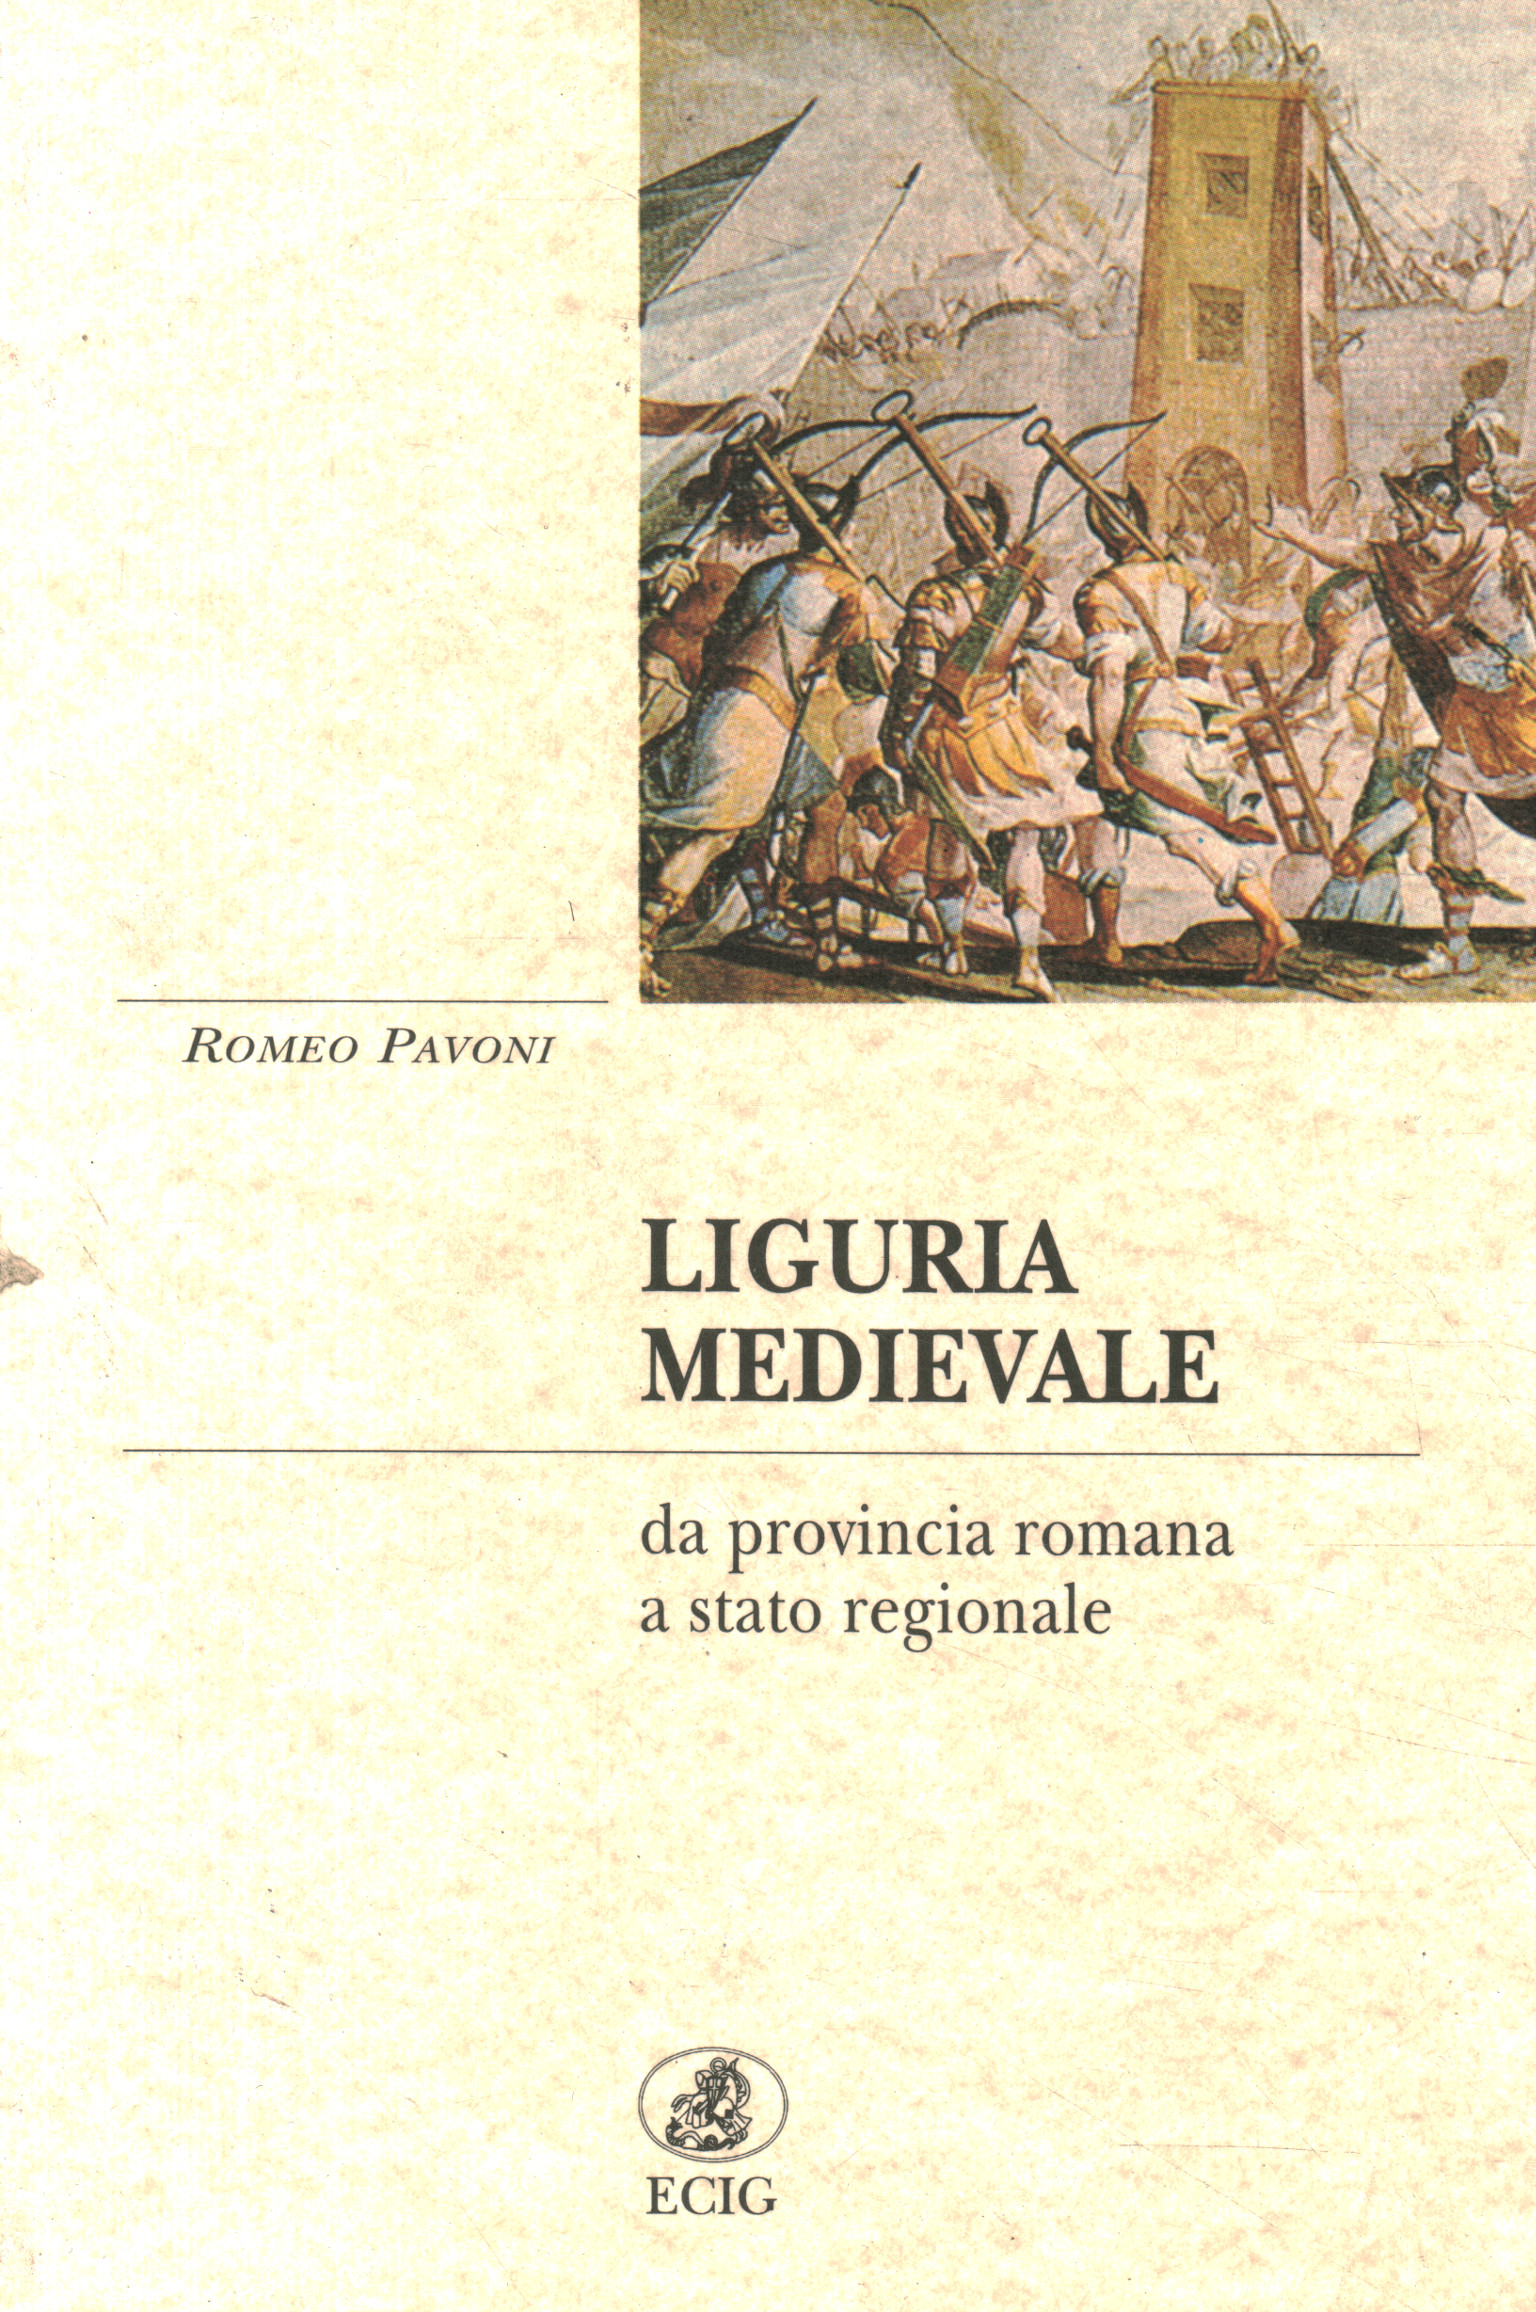 Mittelalterliches Ligurien